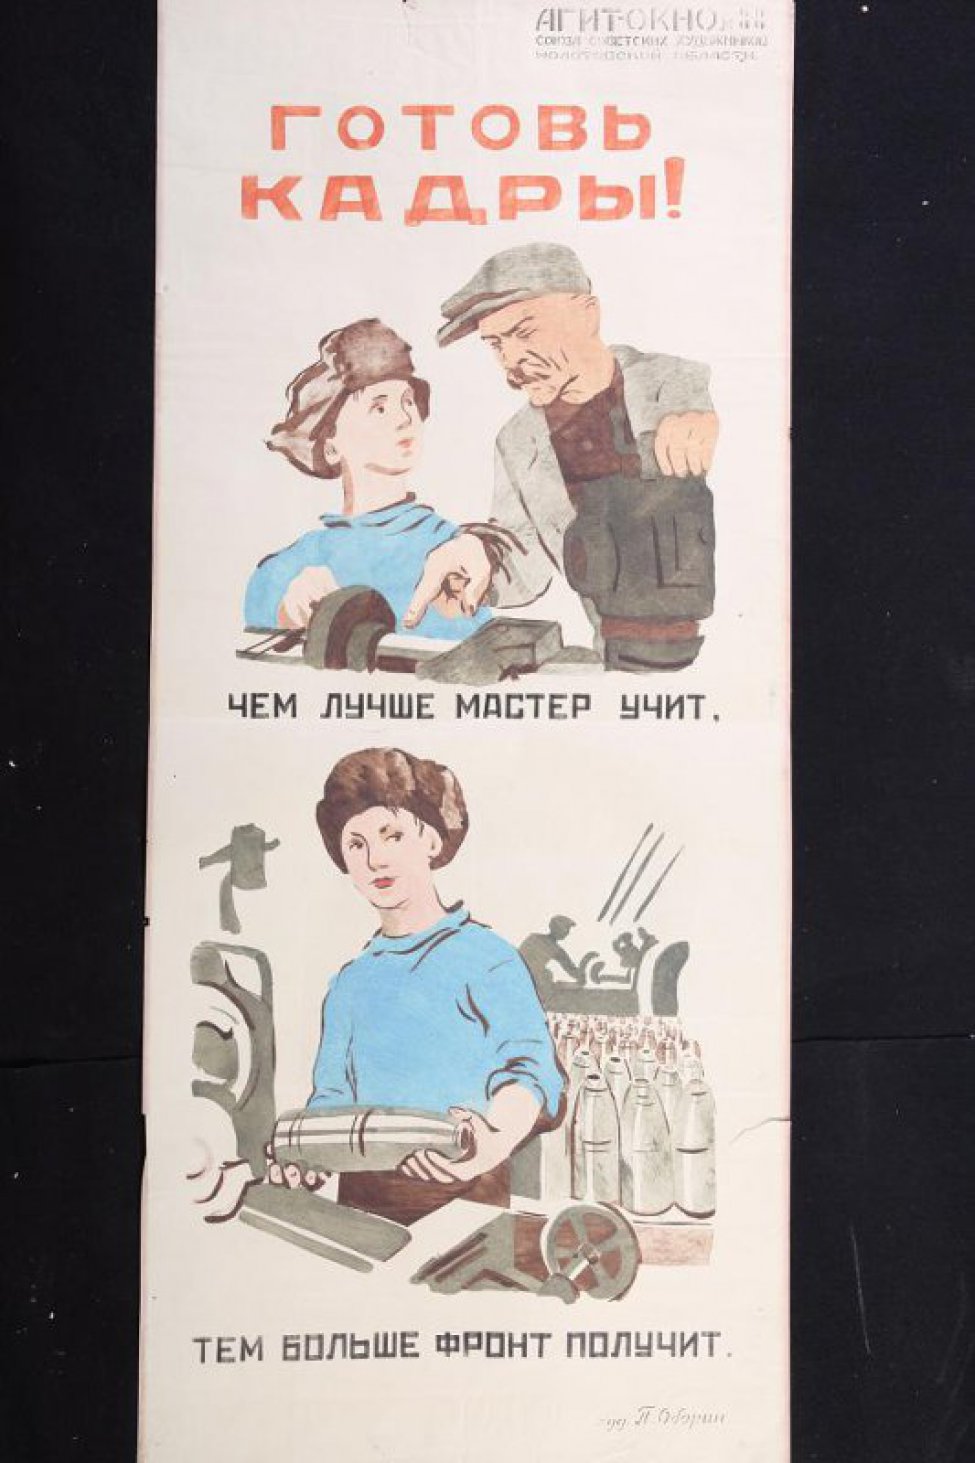 Помещено 2 рисунка: 1) у станка мастер обучает мальчика; 2) мальчик стоит у станка и держит снаряд.